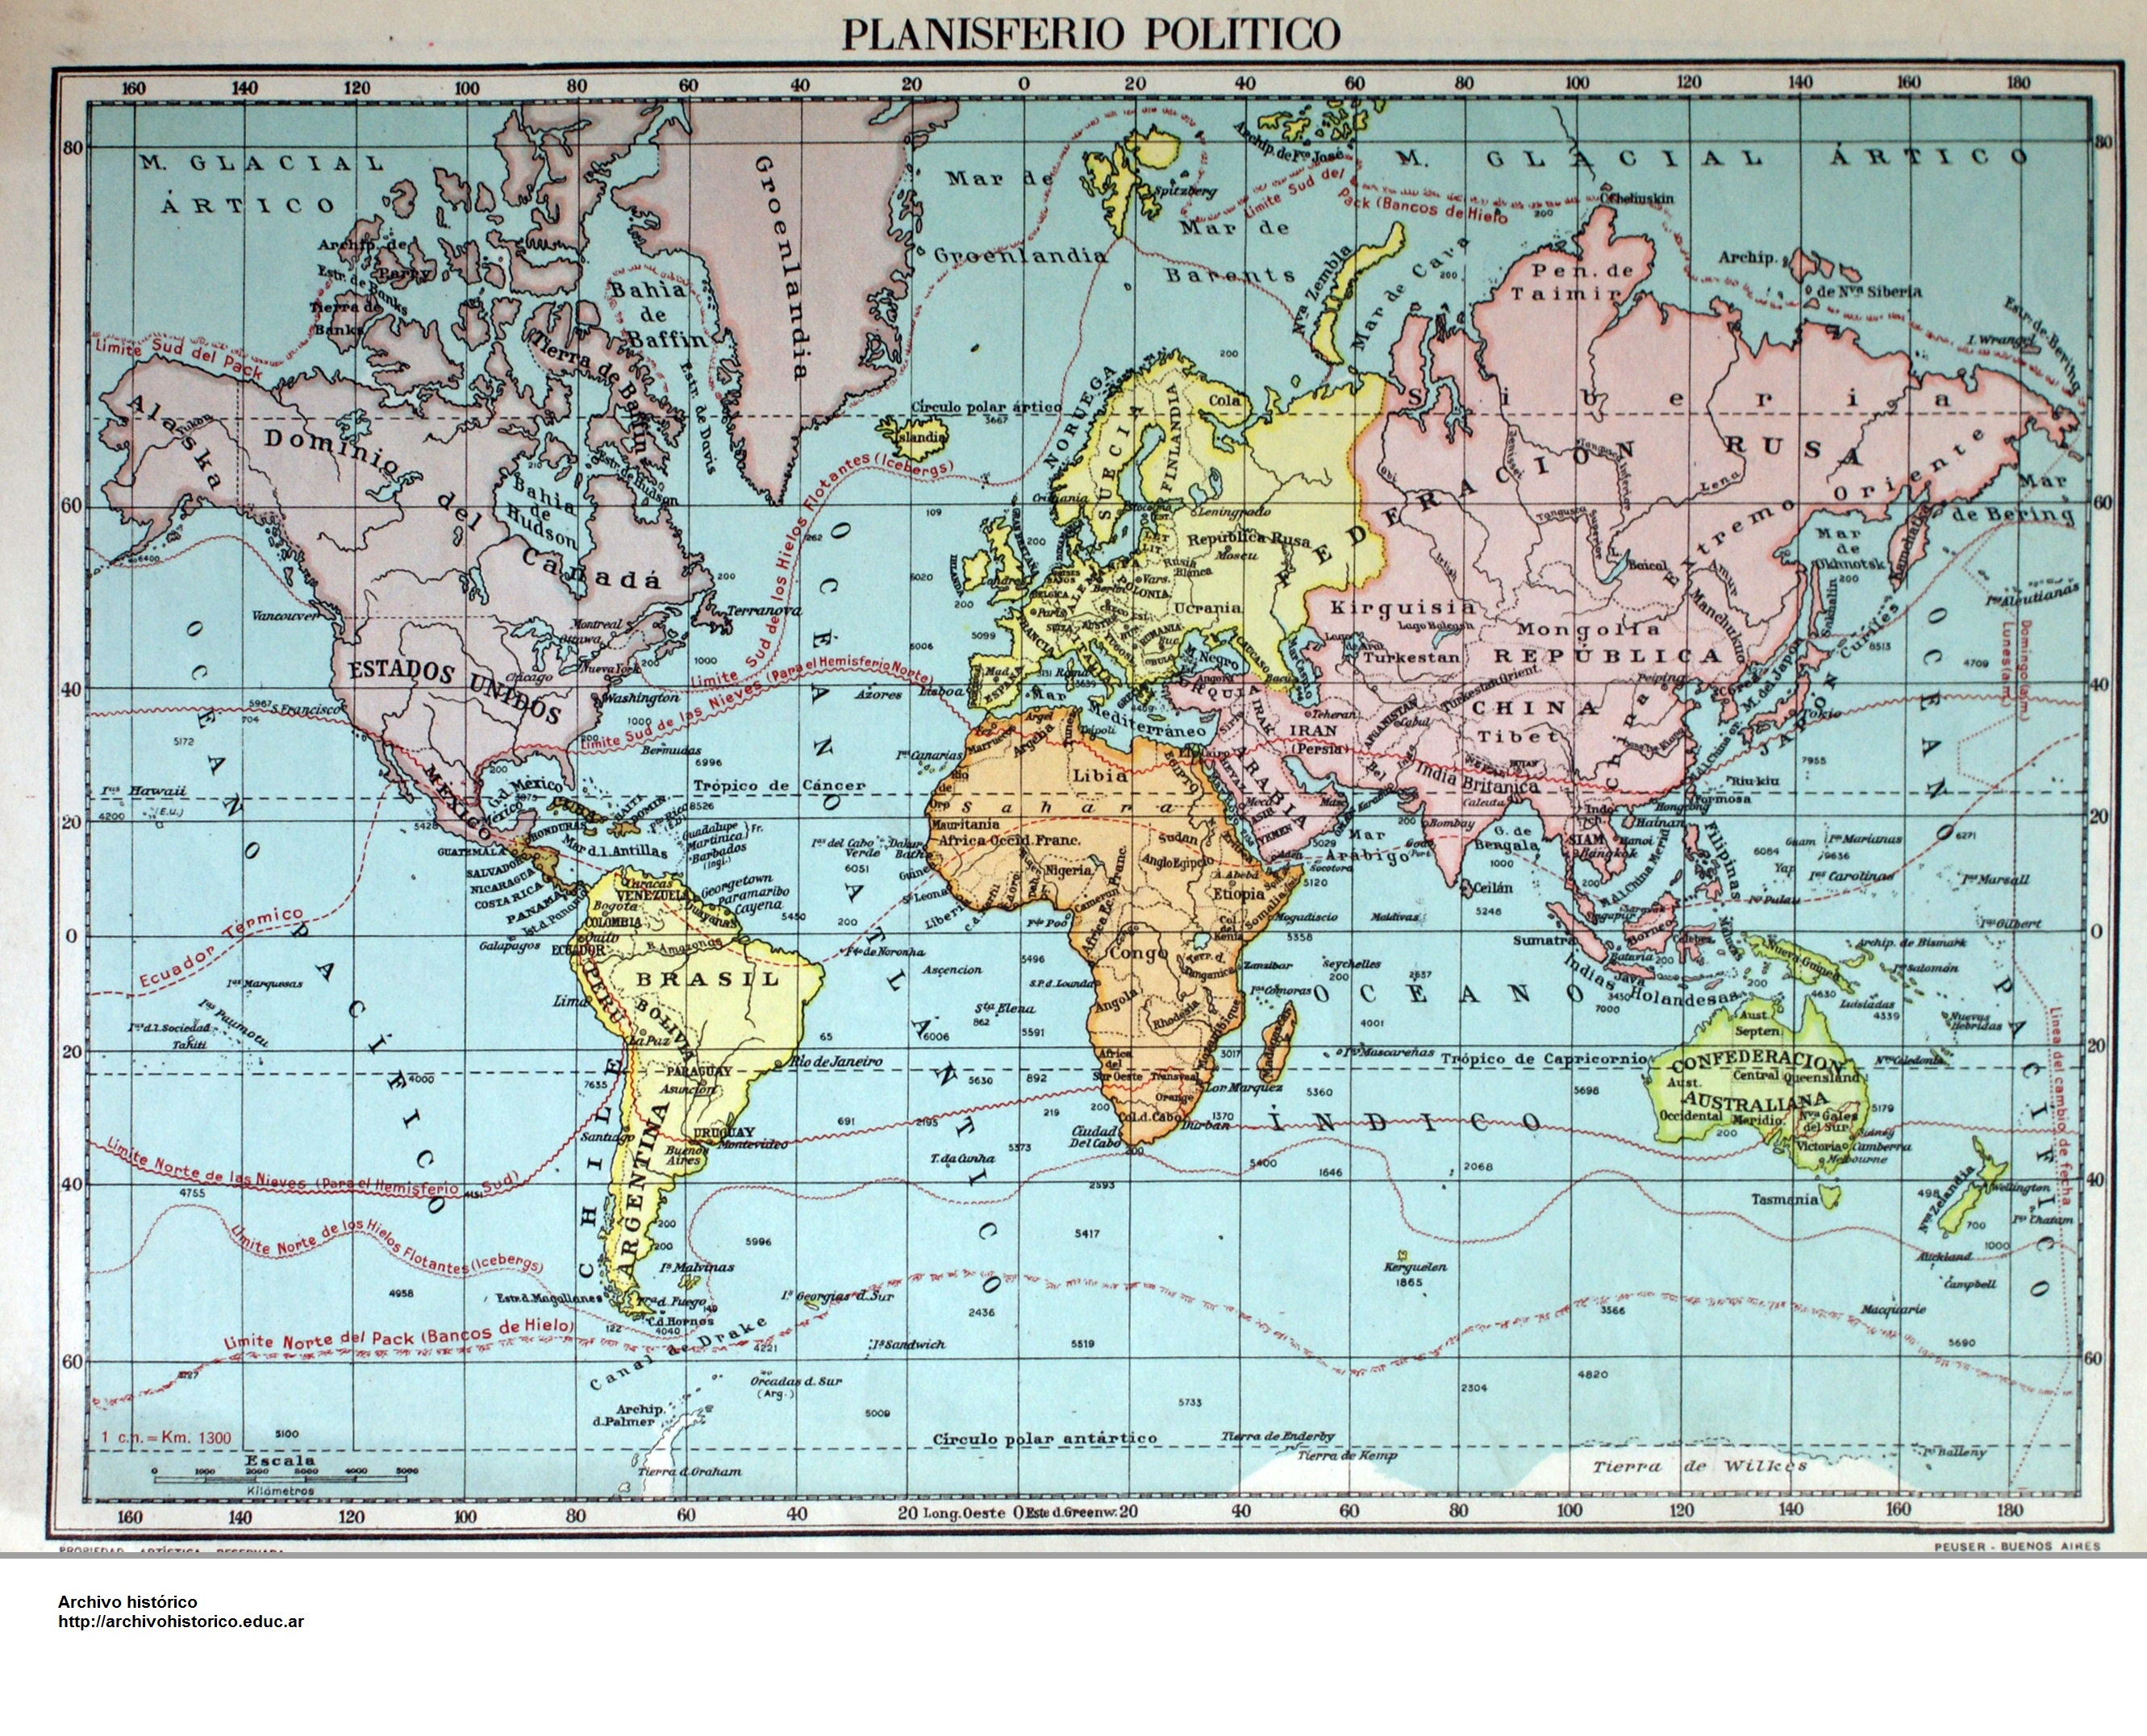 El Planisferio en 1947